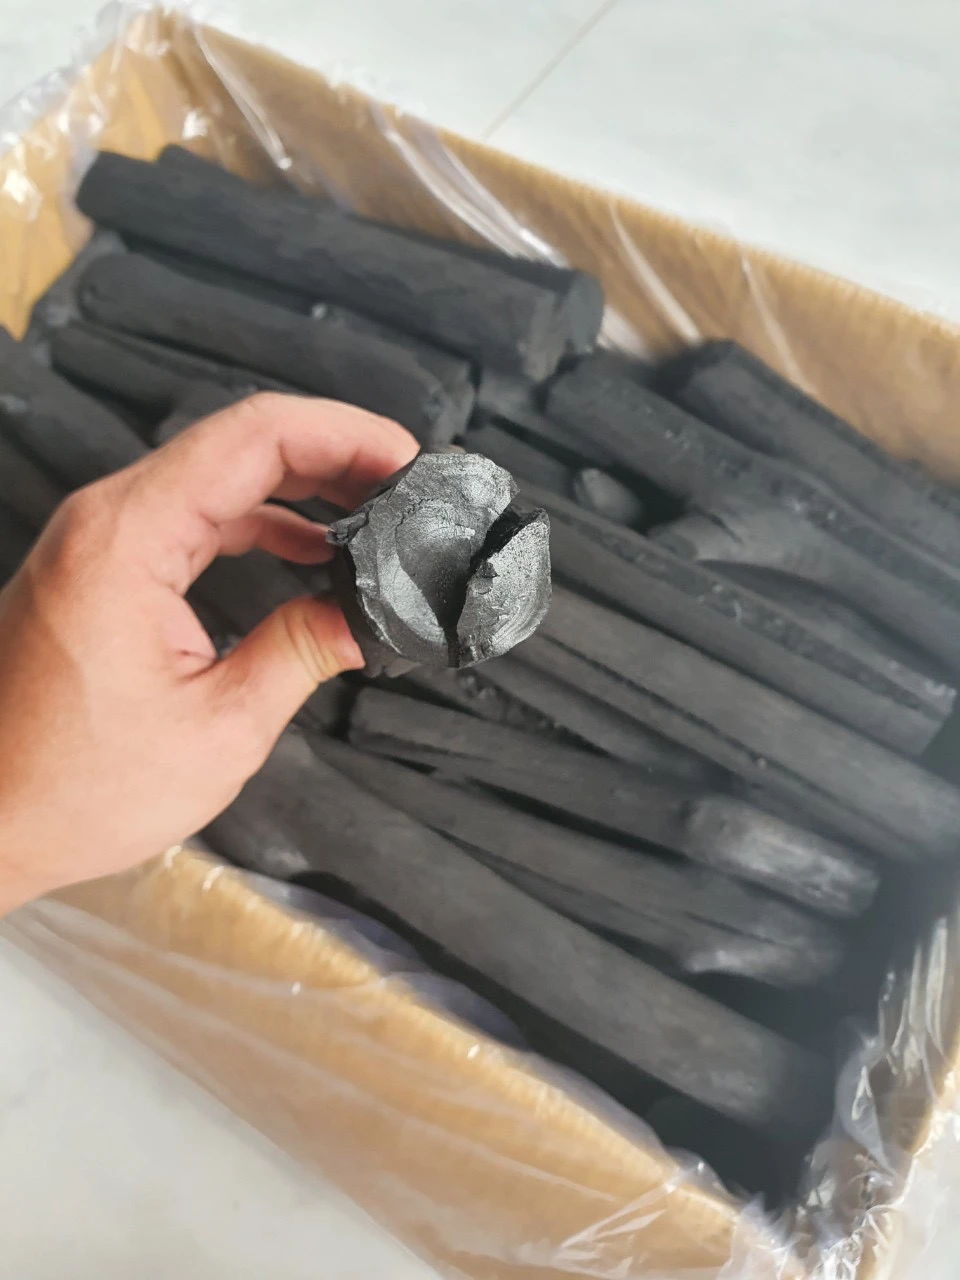 100% NATURAL MANGROVE Firewood Natural charcoal Vietnam Mangrove charcoal lump stick hardwood charcoal